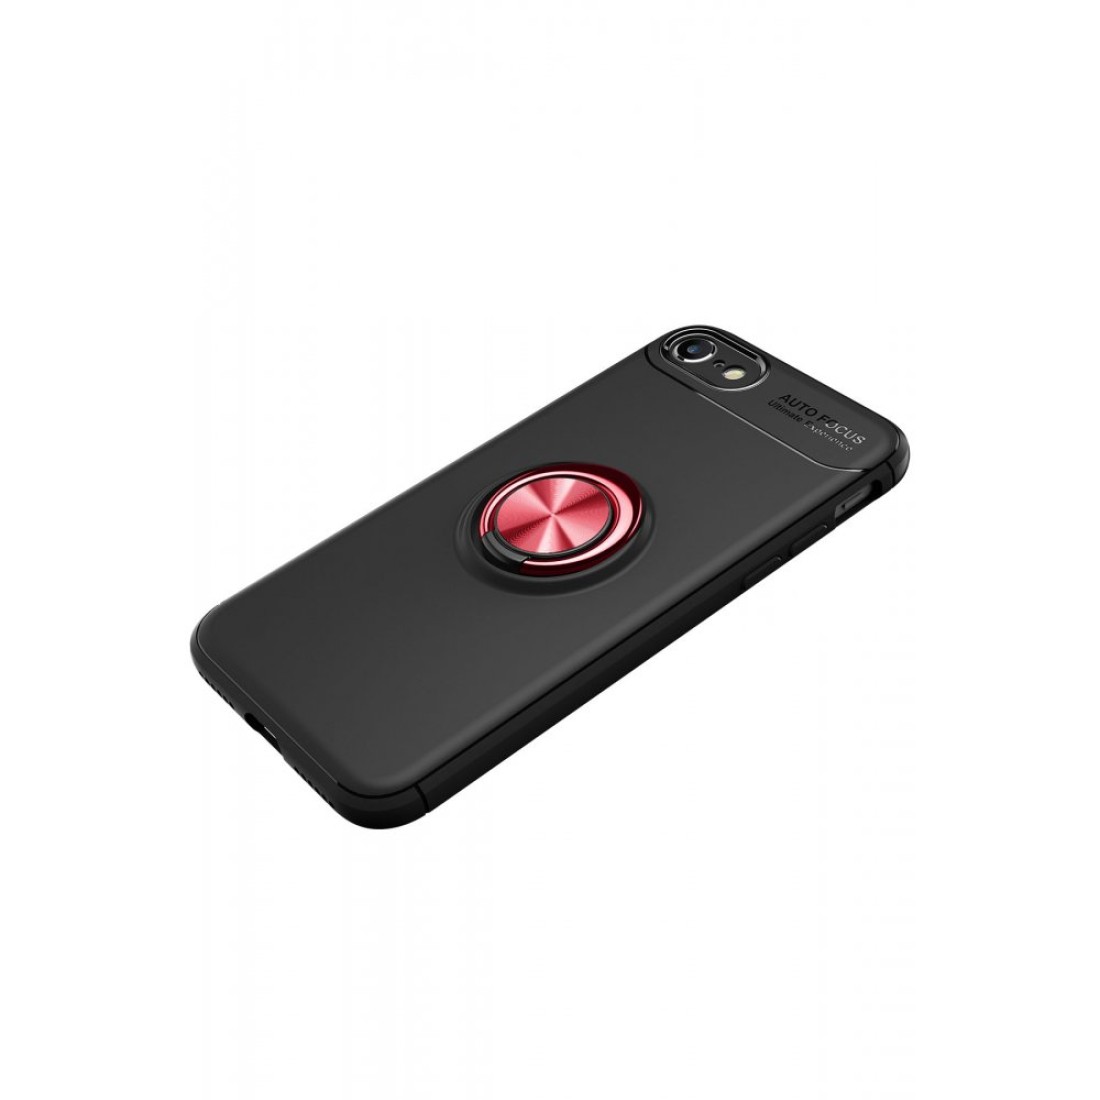 Apple iPhone 7 Kılıf Range Yüzüklü Silikon - Siyah-Kırmızı